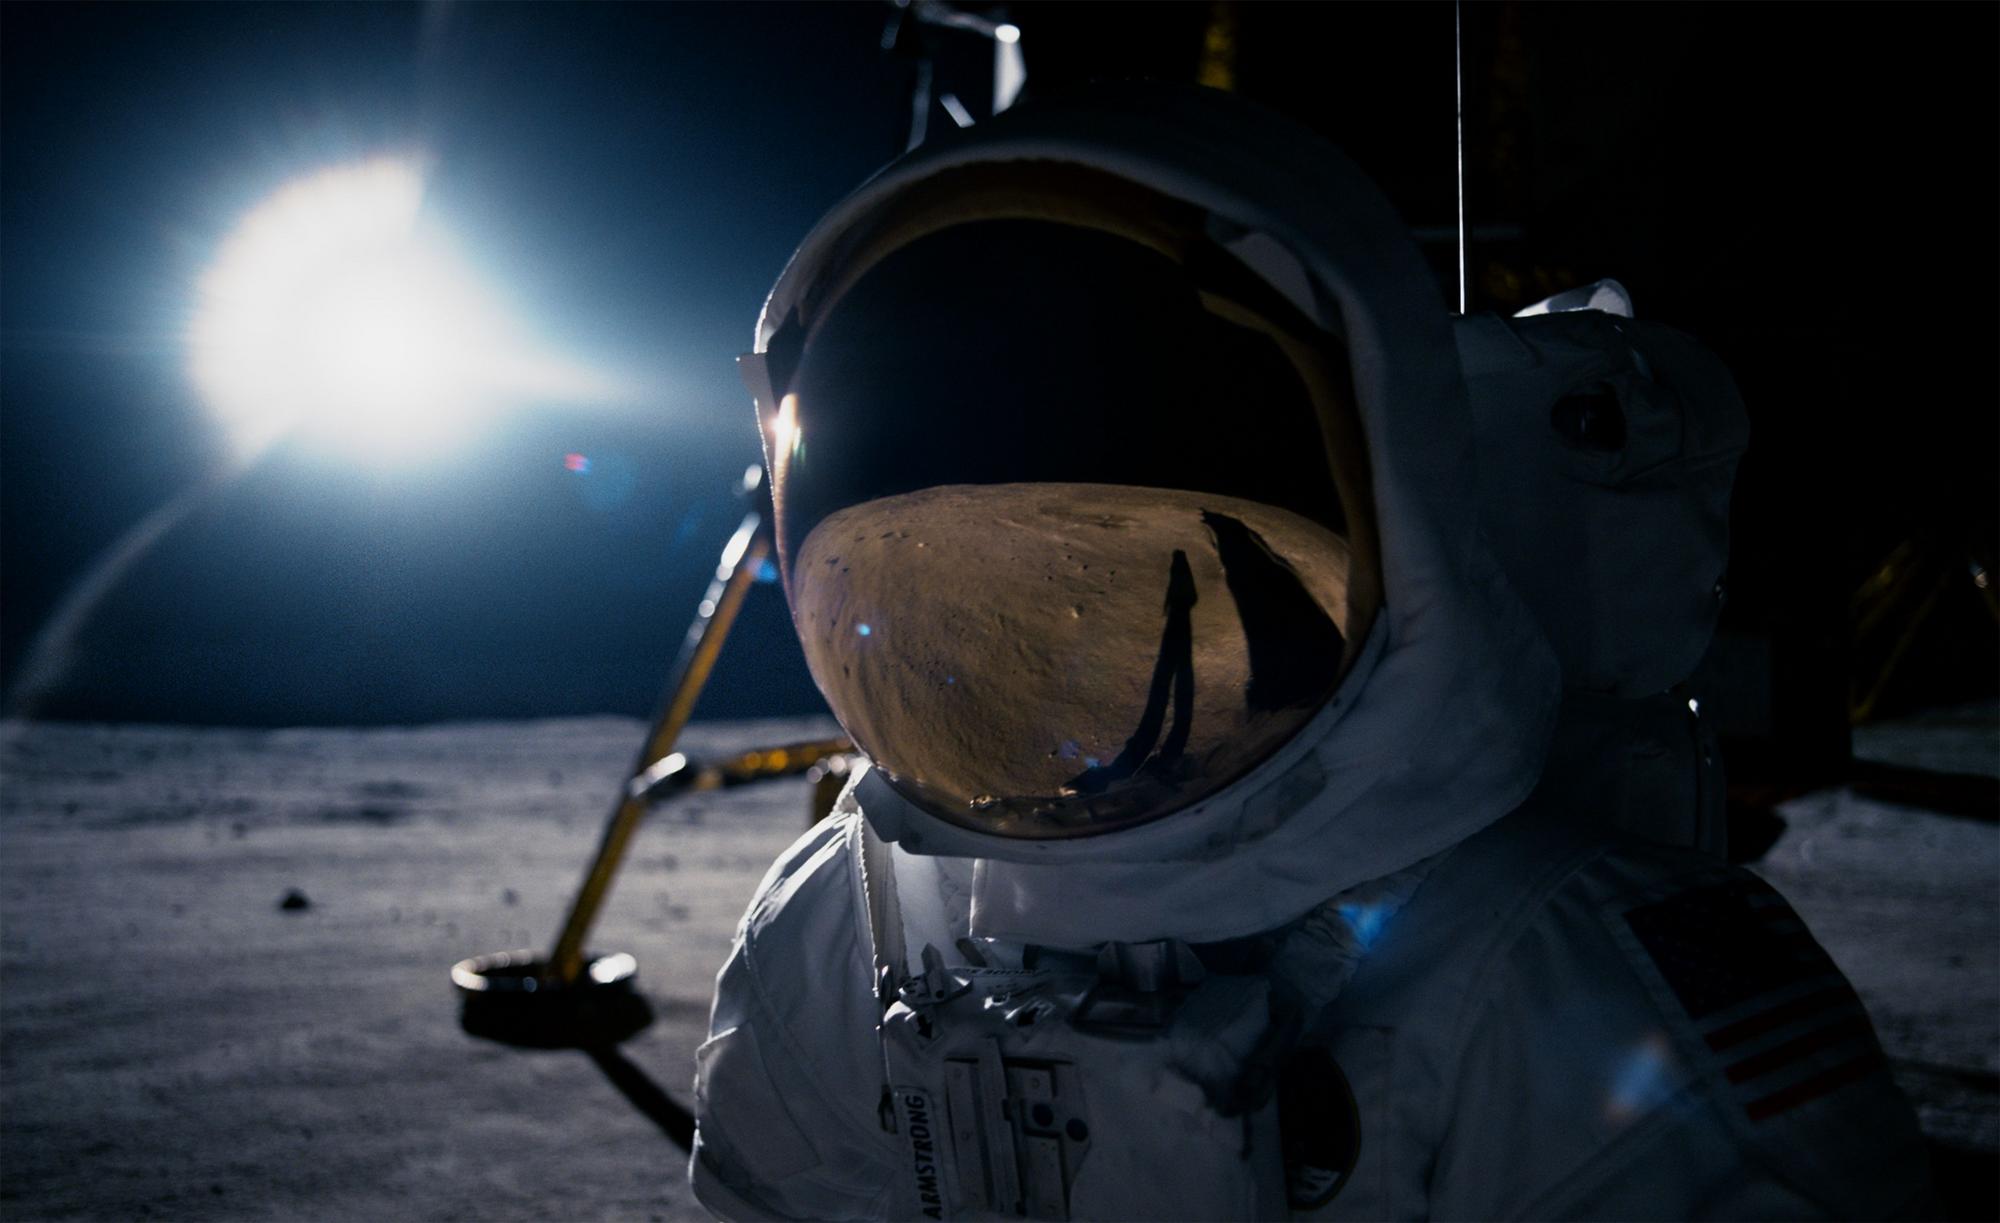 Film stojí za to pozrieť si už len pre scény z povrchu Mesiaca. Ešte sme nevideli lepšie filmové znázornenie toho, čo astronauti asi museli vidieť, keď tam prvýkrát pristáli.